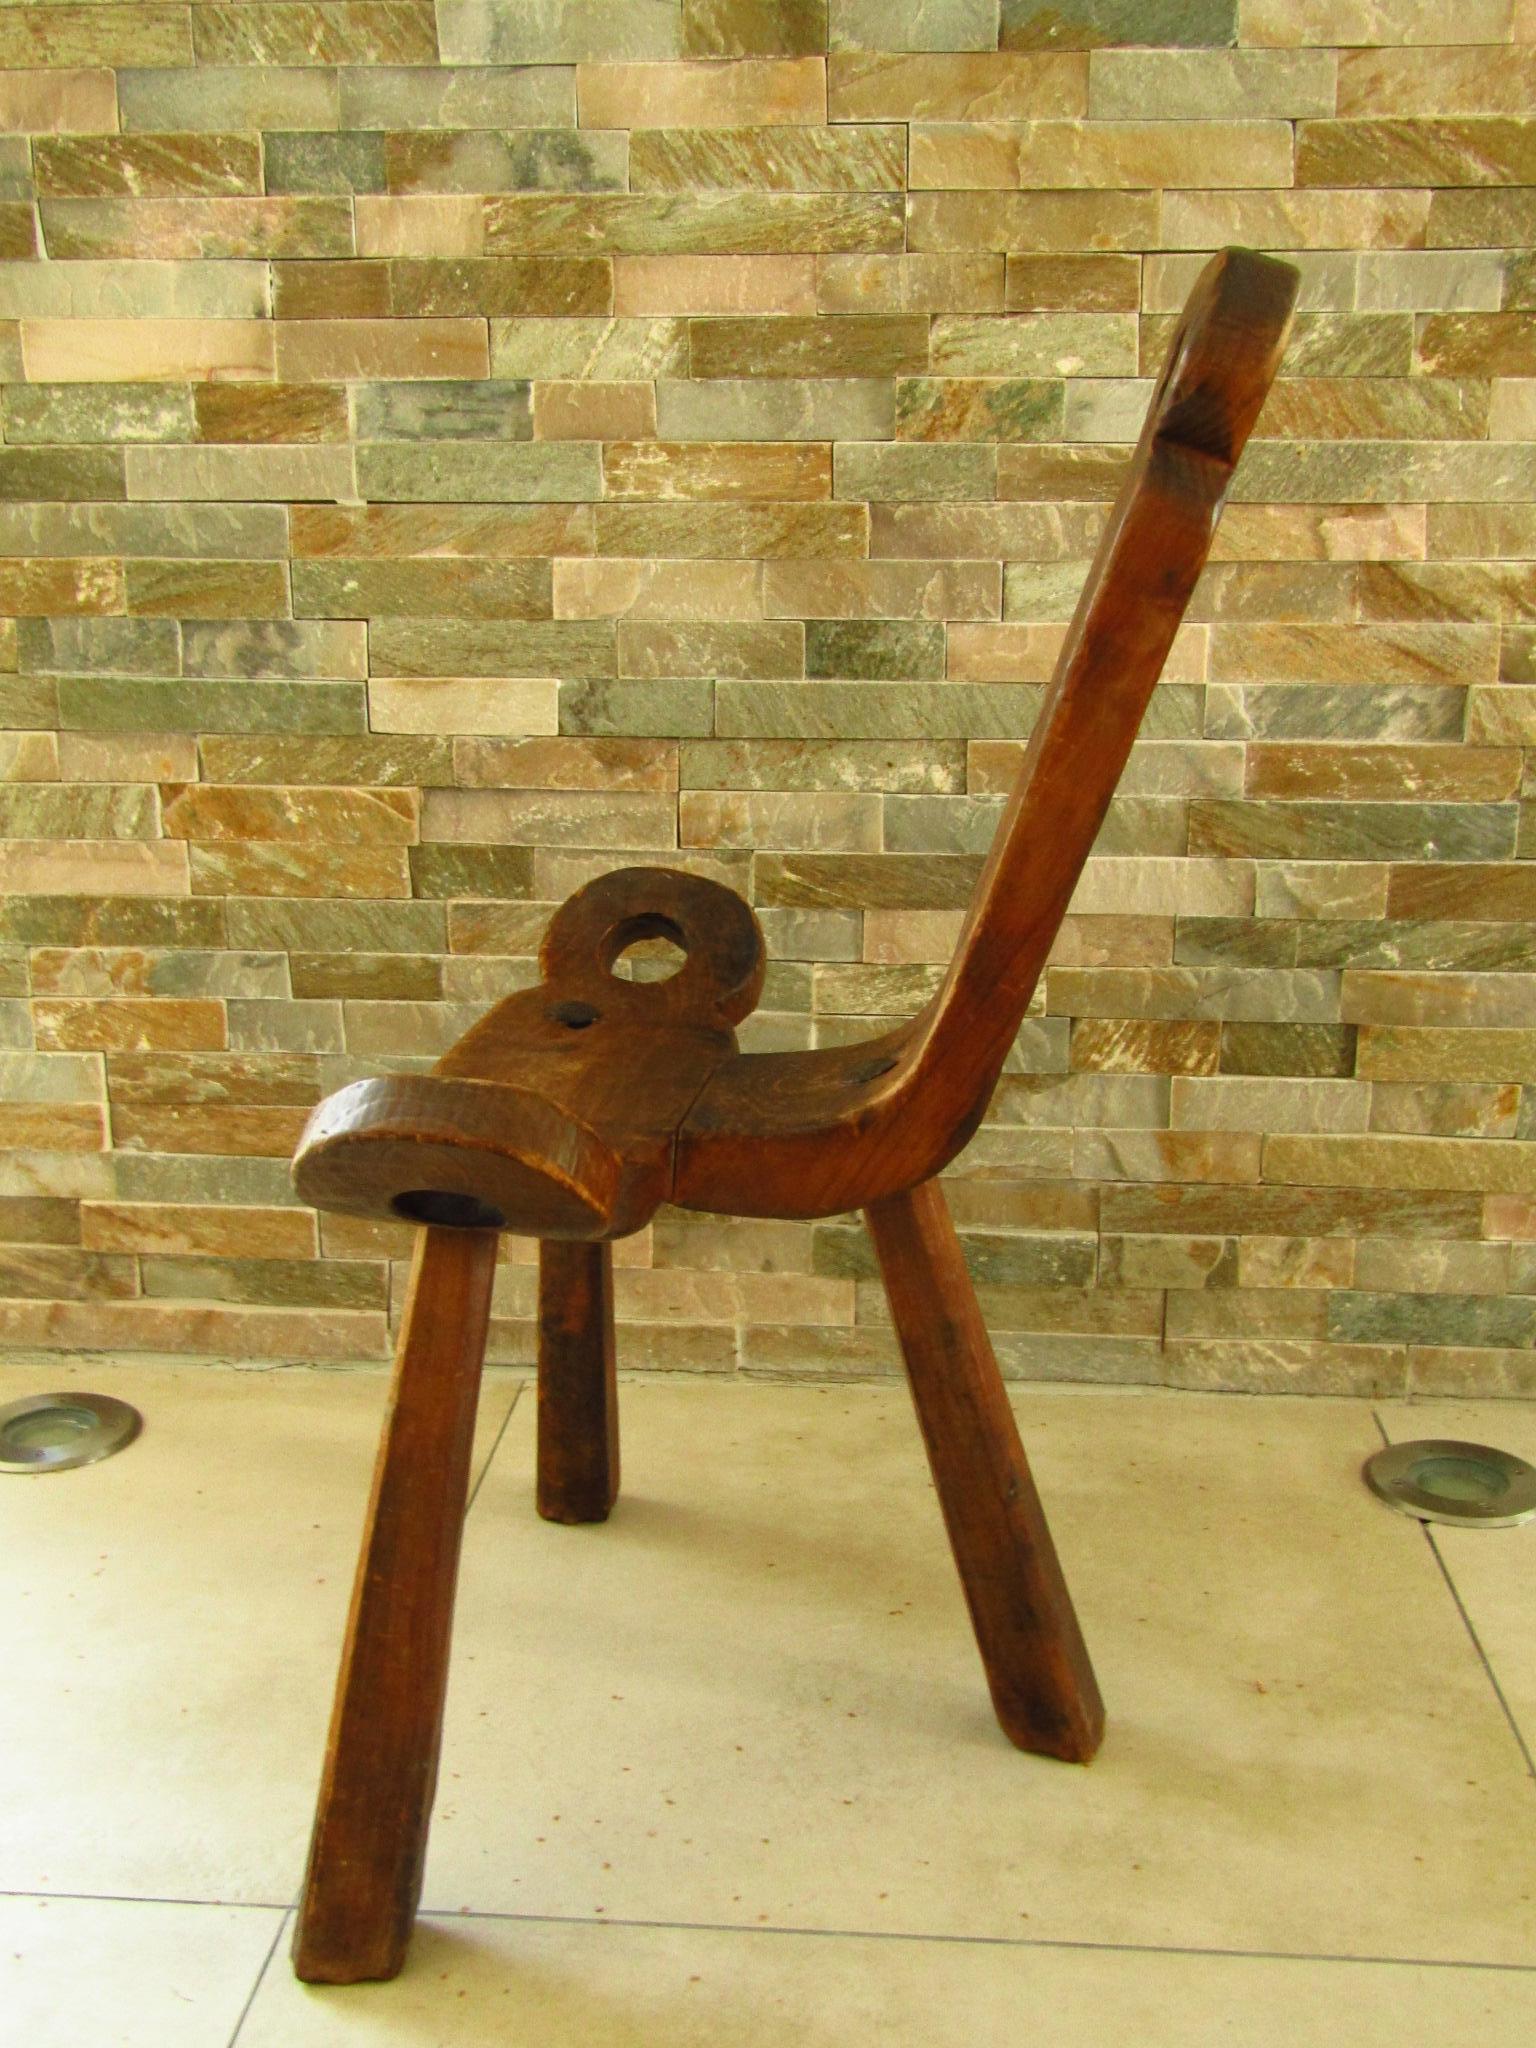 Primitive Rustic Chair Stool, Austria 18th Century 1